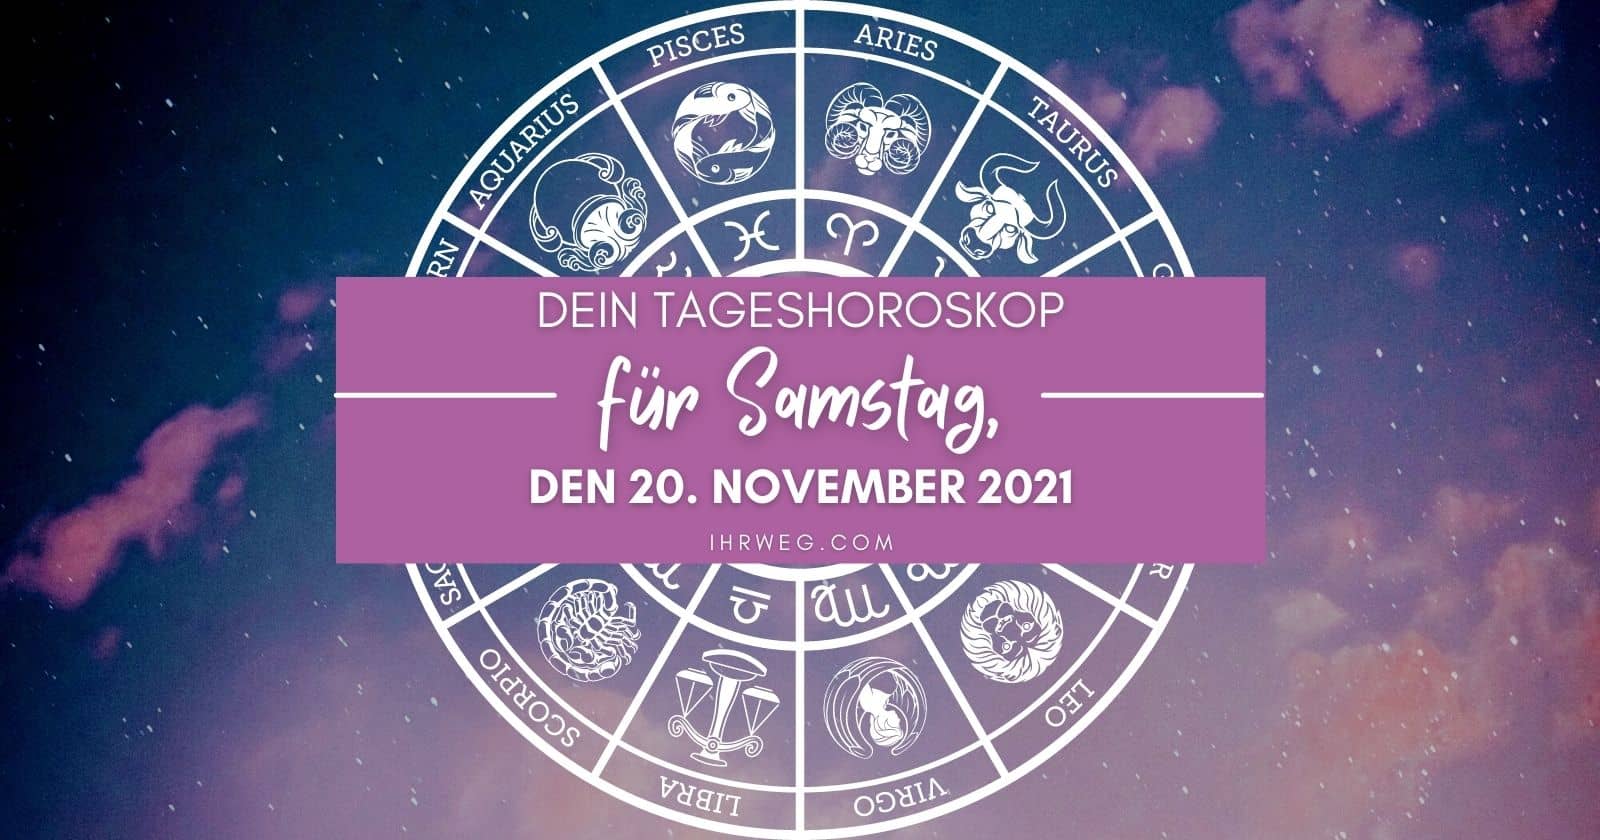 Dein Tageshoroskop für Samstag, den 20. November 2021